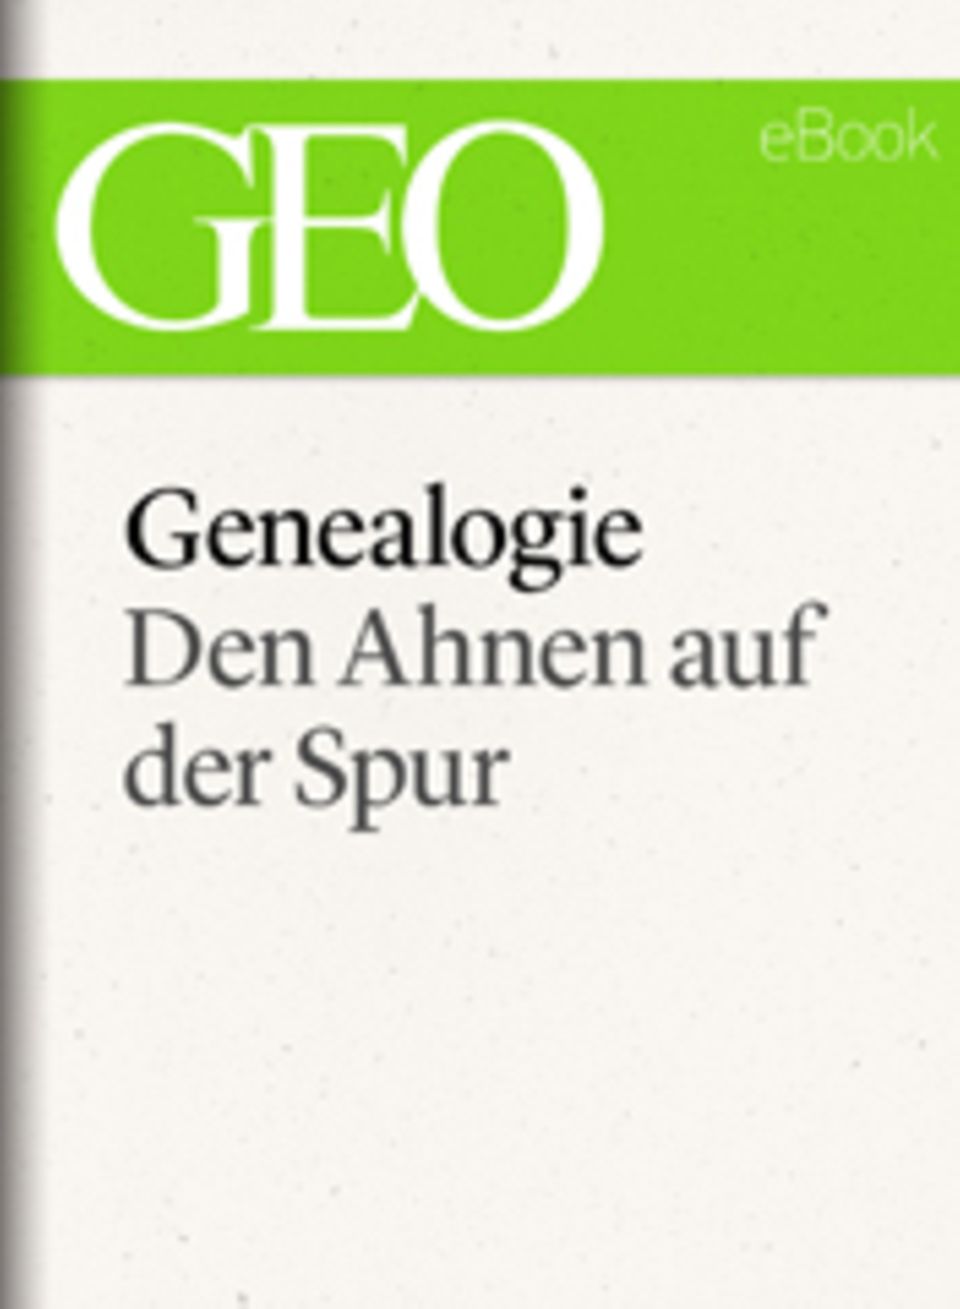 Den Ahnen auf der Spur: GEO eBook "Genealogie"